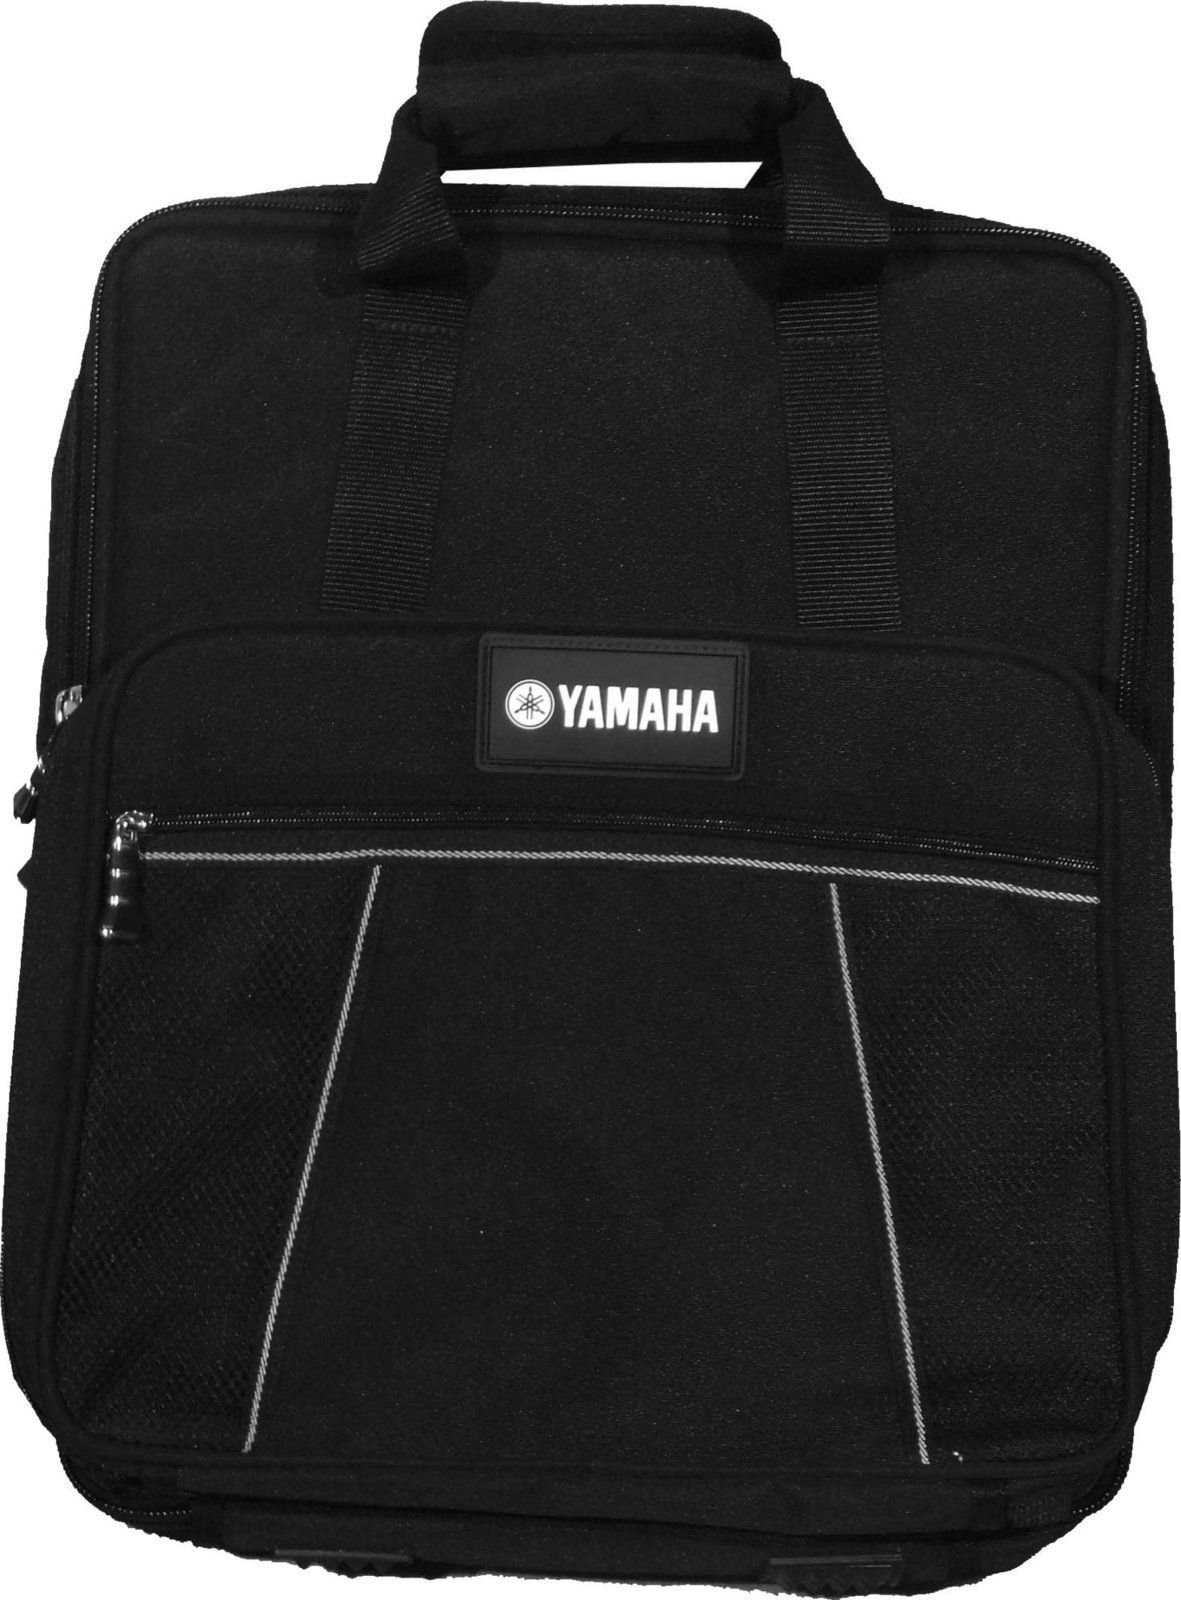 Väska / fodral för ljudutrustning Yamaha SCMG12